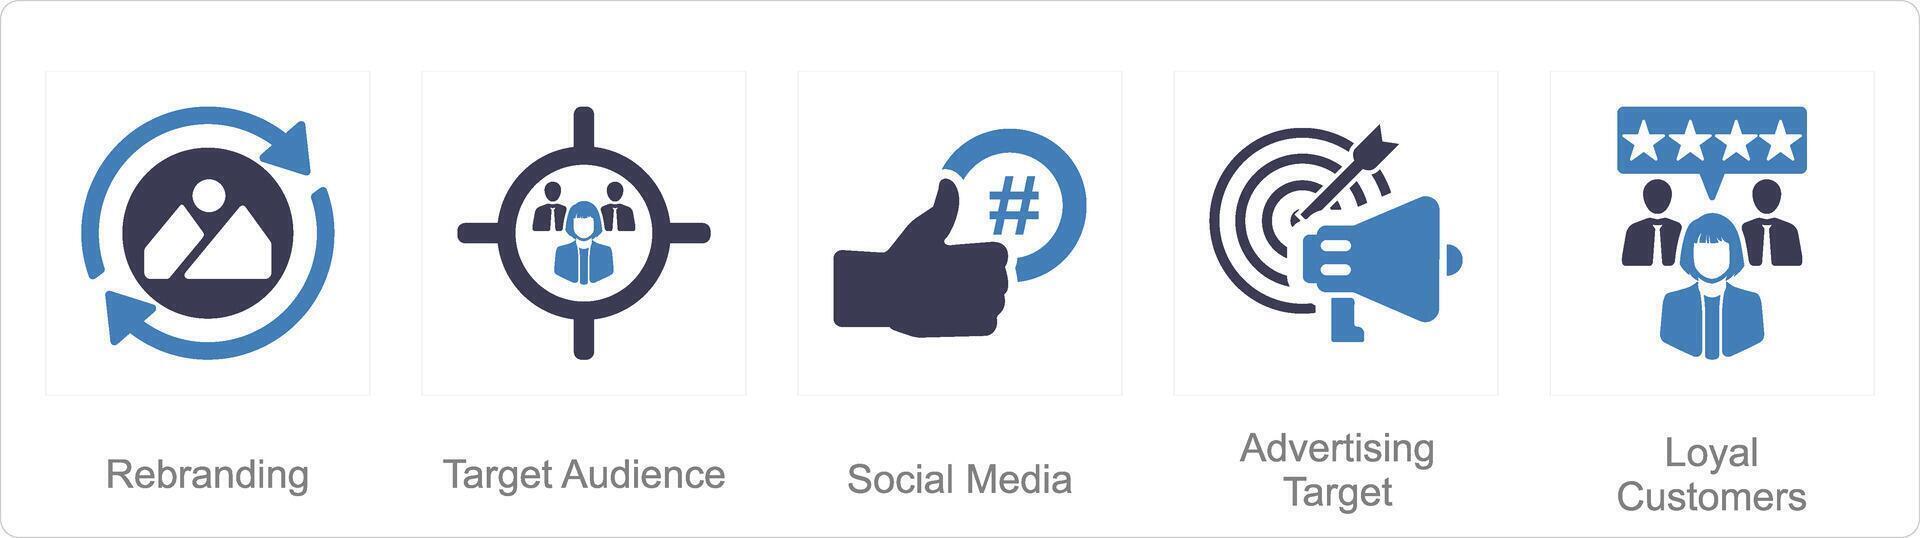 une ensemble de 5 l'image de marque Icônes comme rebranding, cible public, social médias vecteur